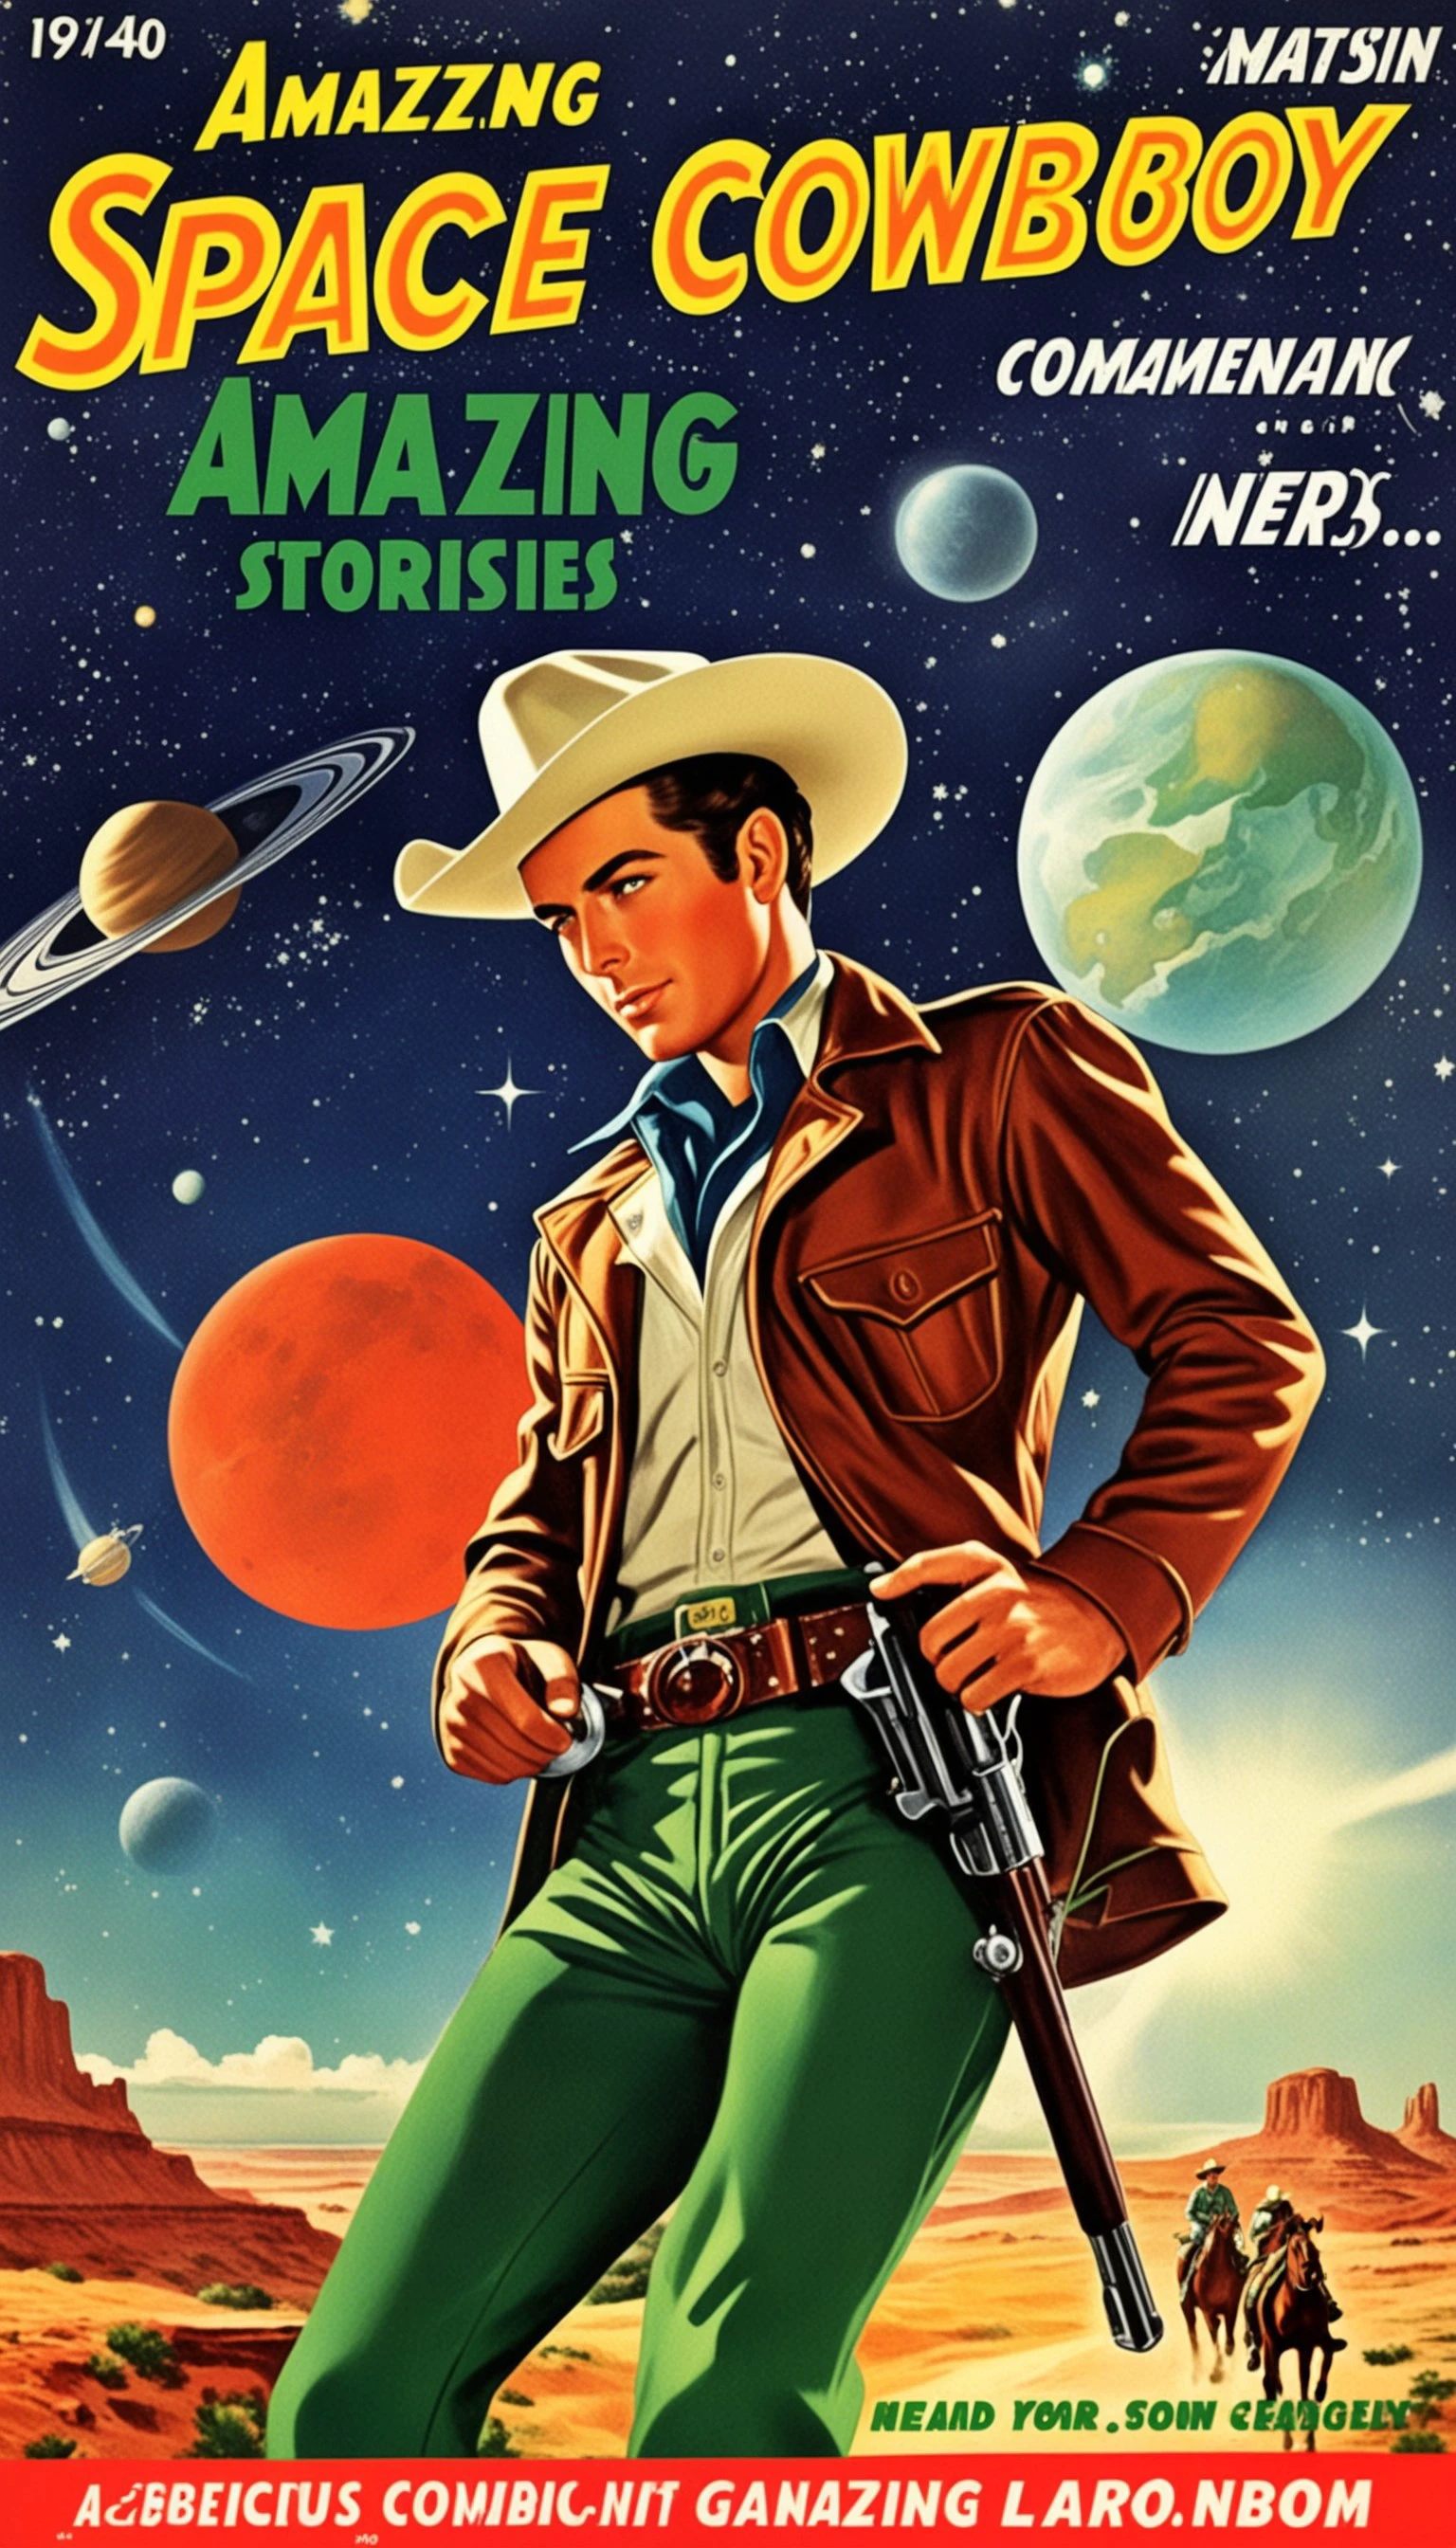 ein Cover für ein Comicbuch, ein Comic-Cover über alle Space Cowboys, 1 Cowboy mit Hut im Stil erstaunlicher Geschichten, 1940er Jahre 1950er Jahre, rot und Grün, Comic-Kunst, realistische Genreszenen, romantisierter Realismus dynamisch